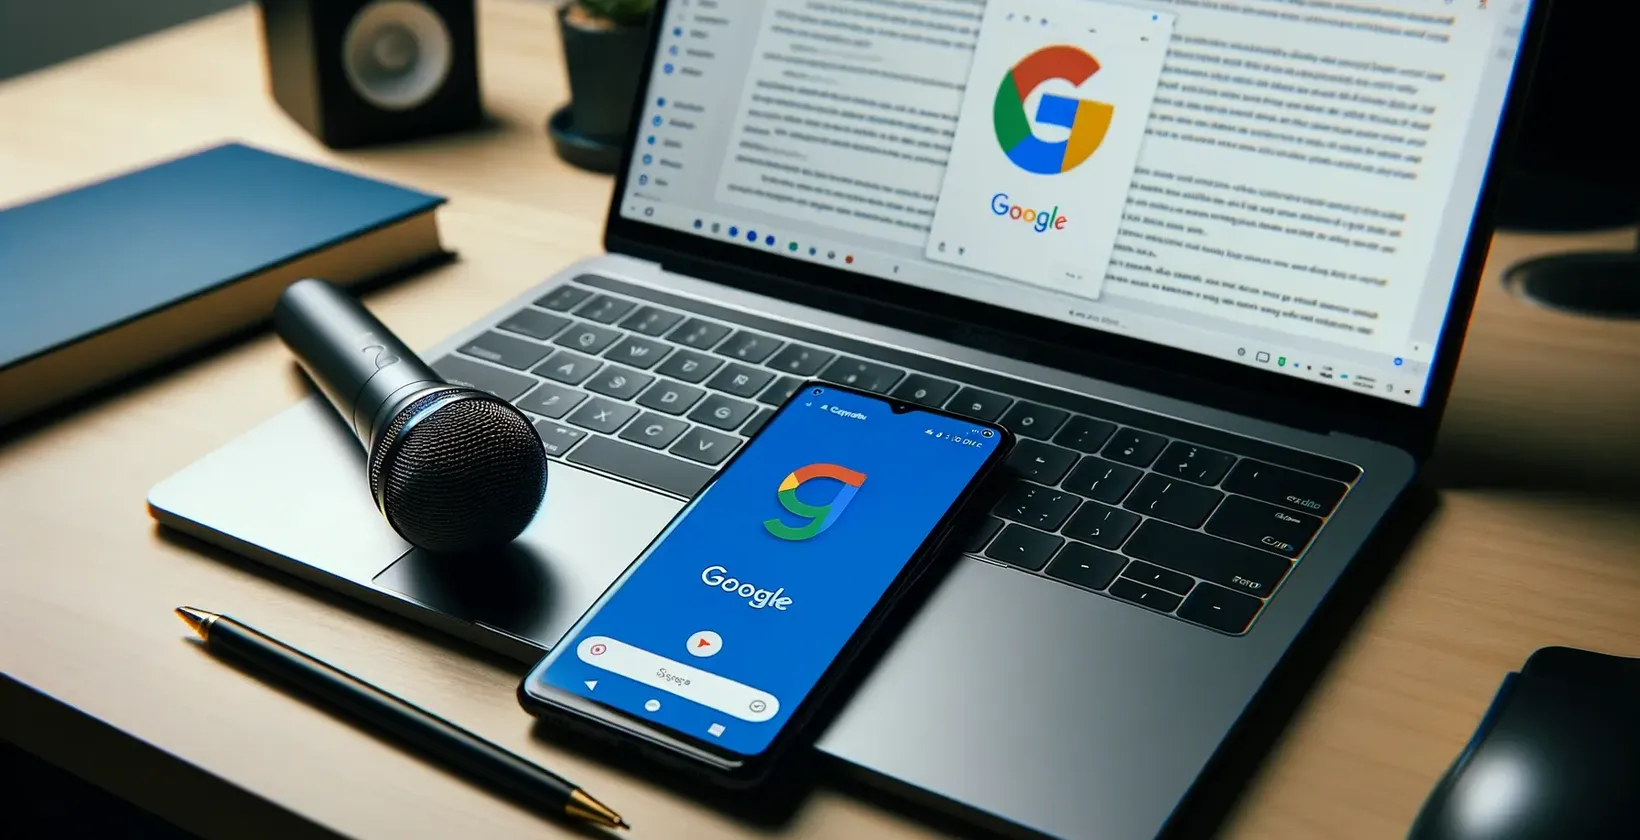 Google zameraný pracovný priestor s notebookom, na ktorom je zobrazený dokument, smartfón s logom, mikrofón na touchpade a pero na notebook.